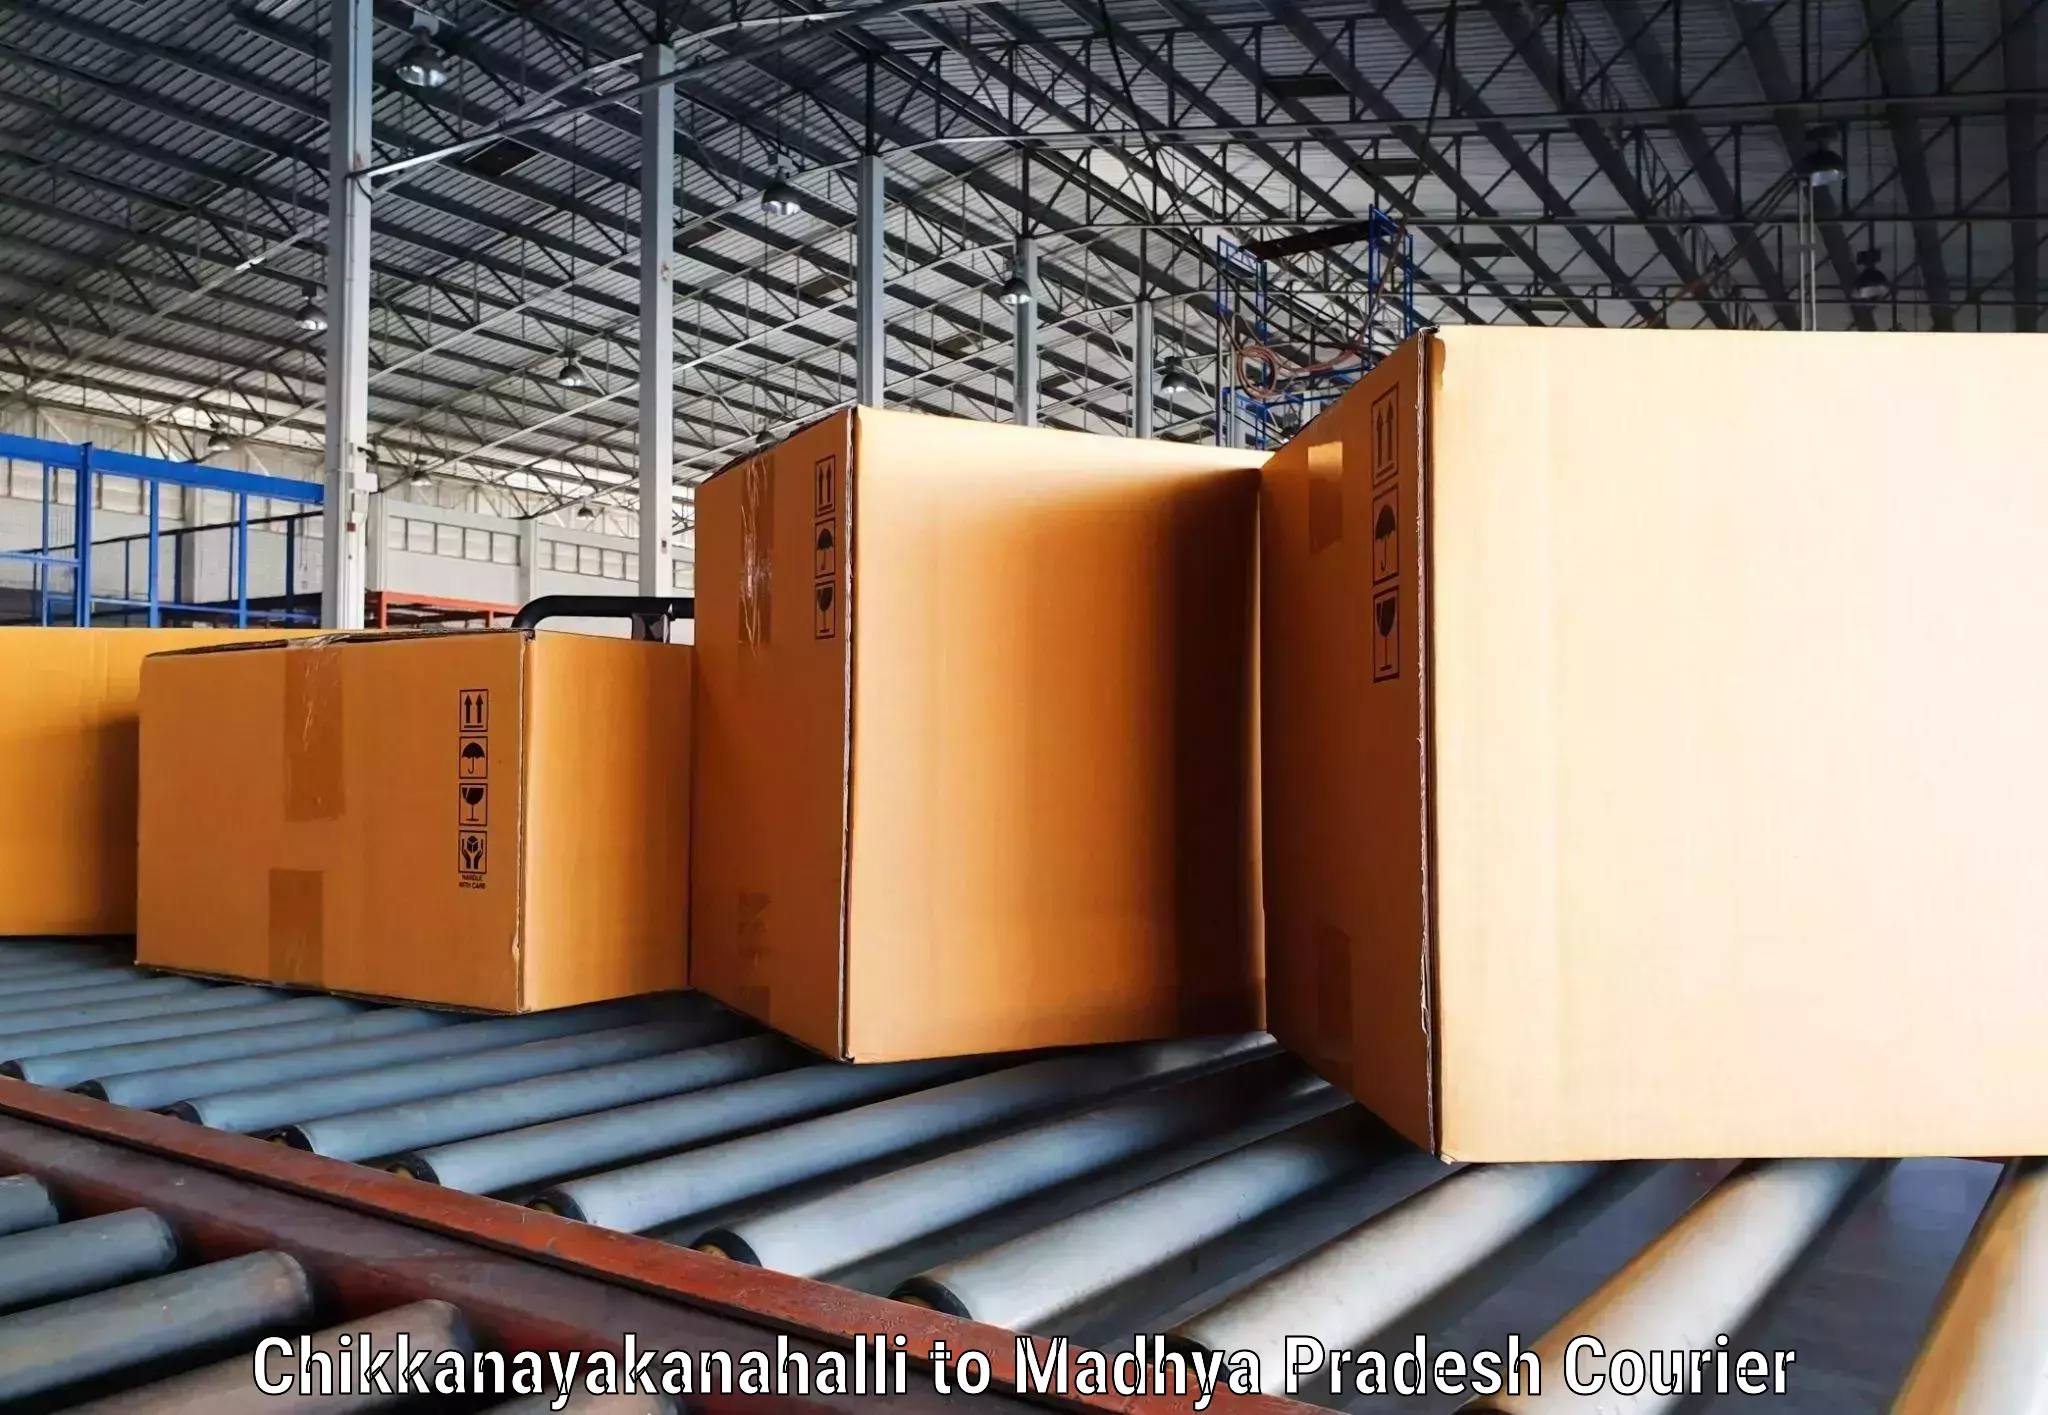 Reliable shipping solutions in Chikkanayakanahalli to Raisen